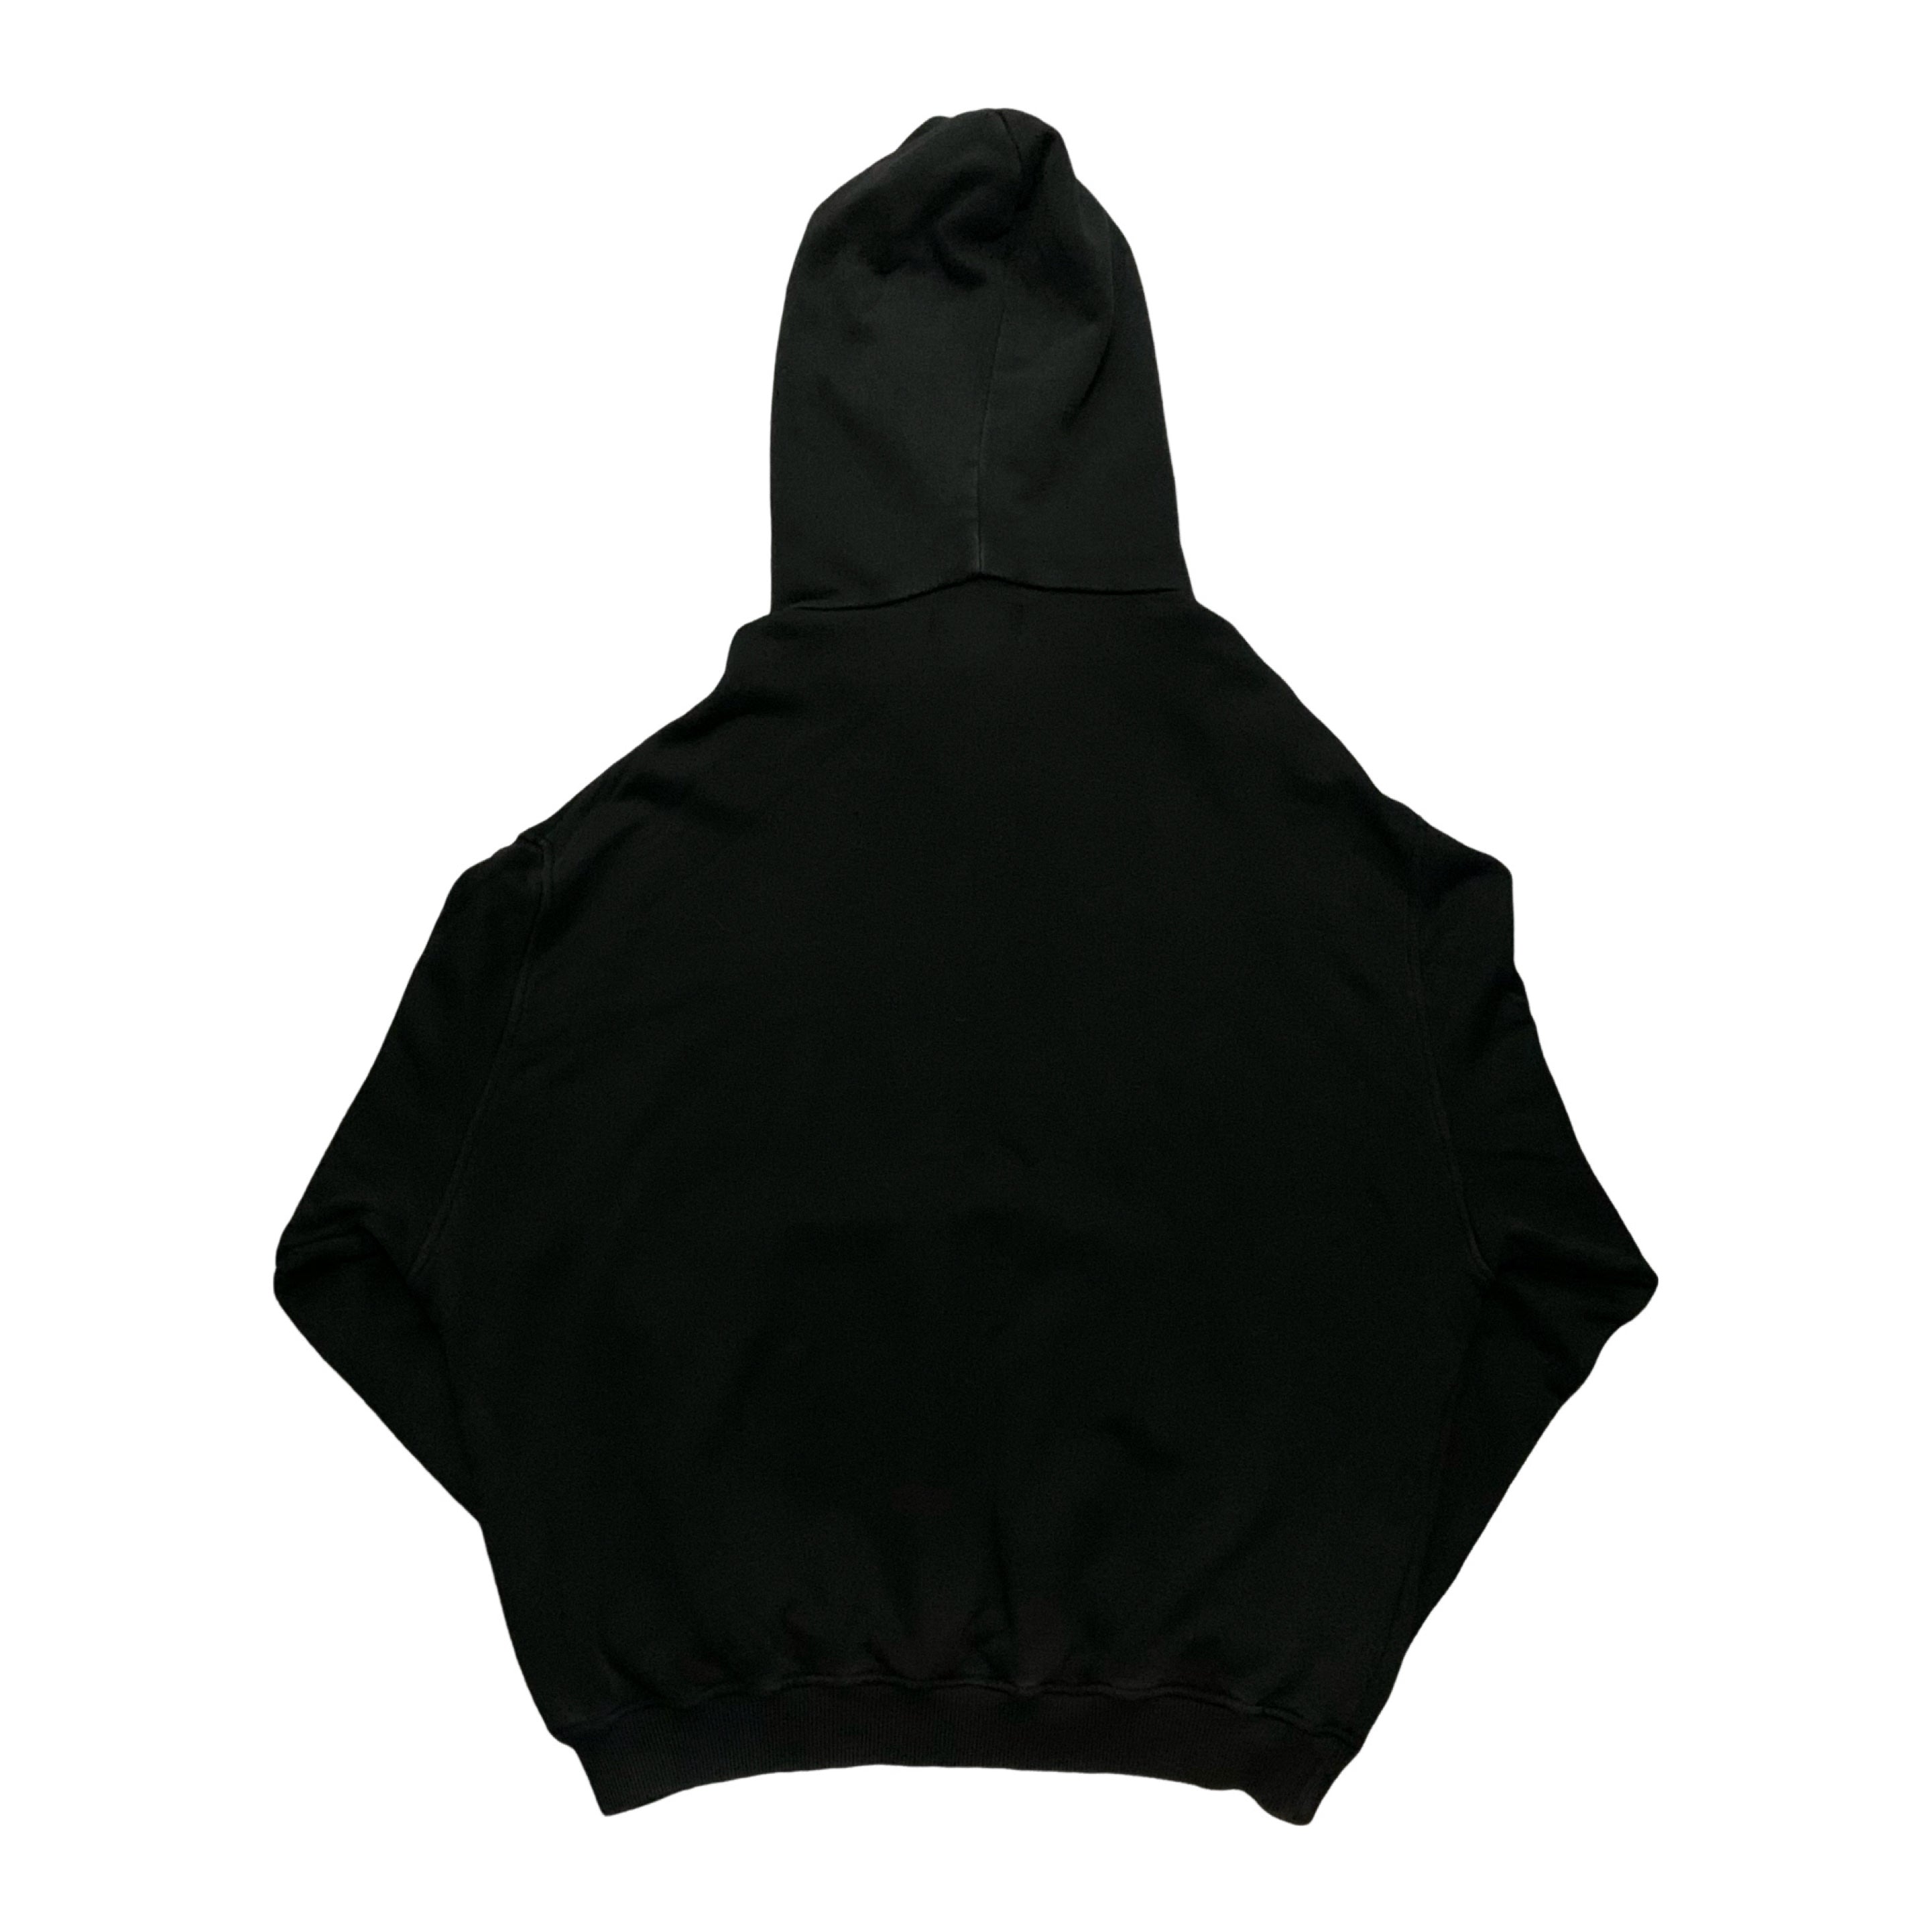 Represent Small Hellraiser Vintage Black Hoodie